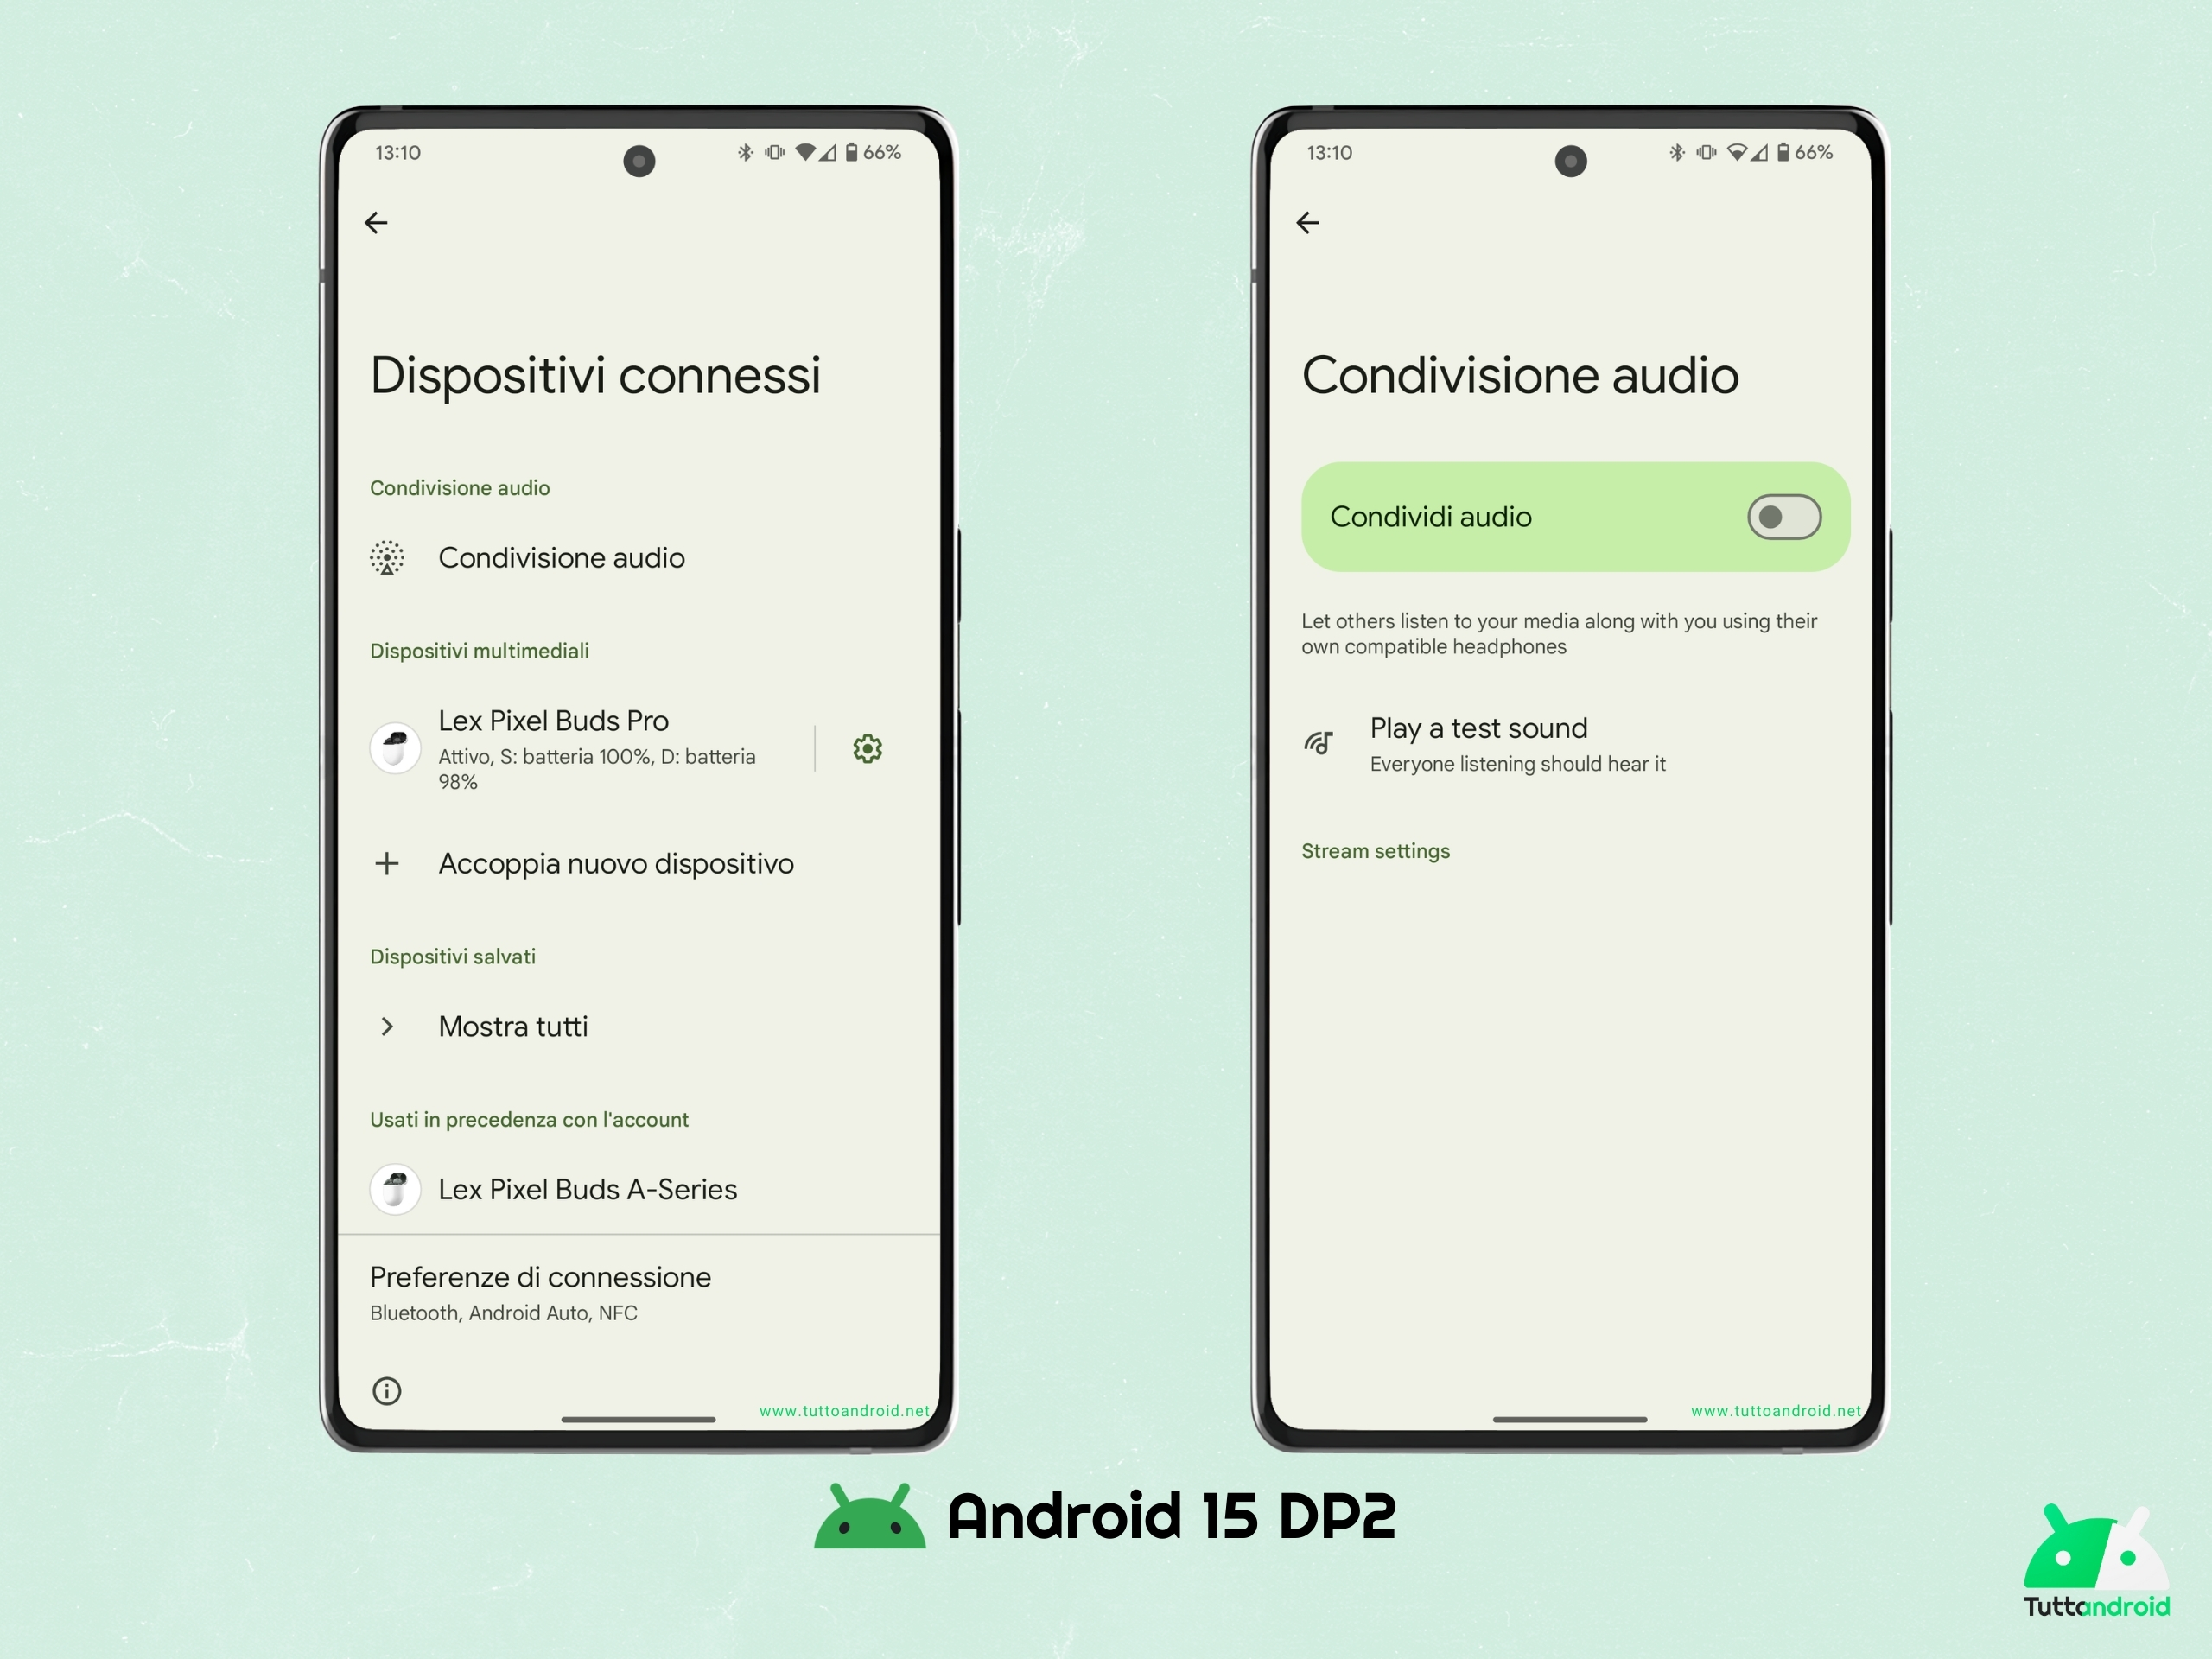 Android 15 DP2 - Condivisione audio